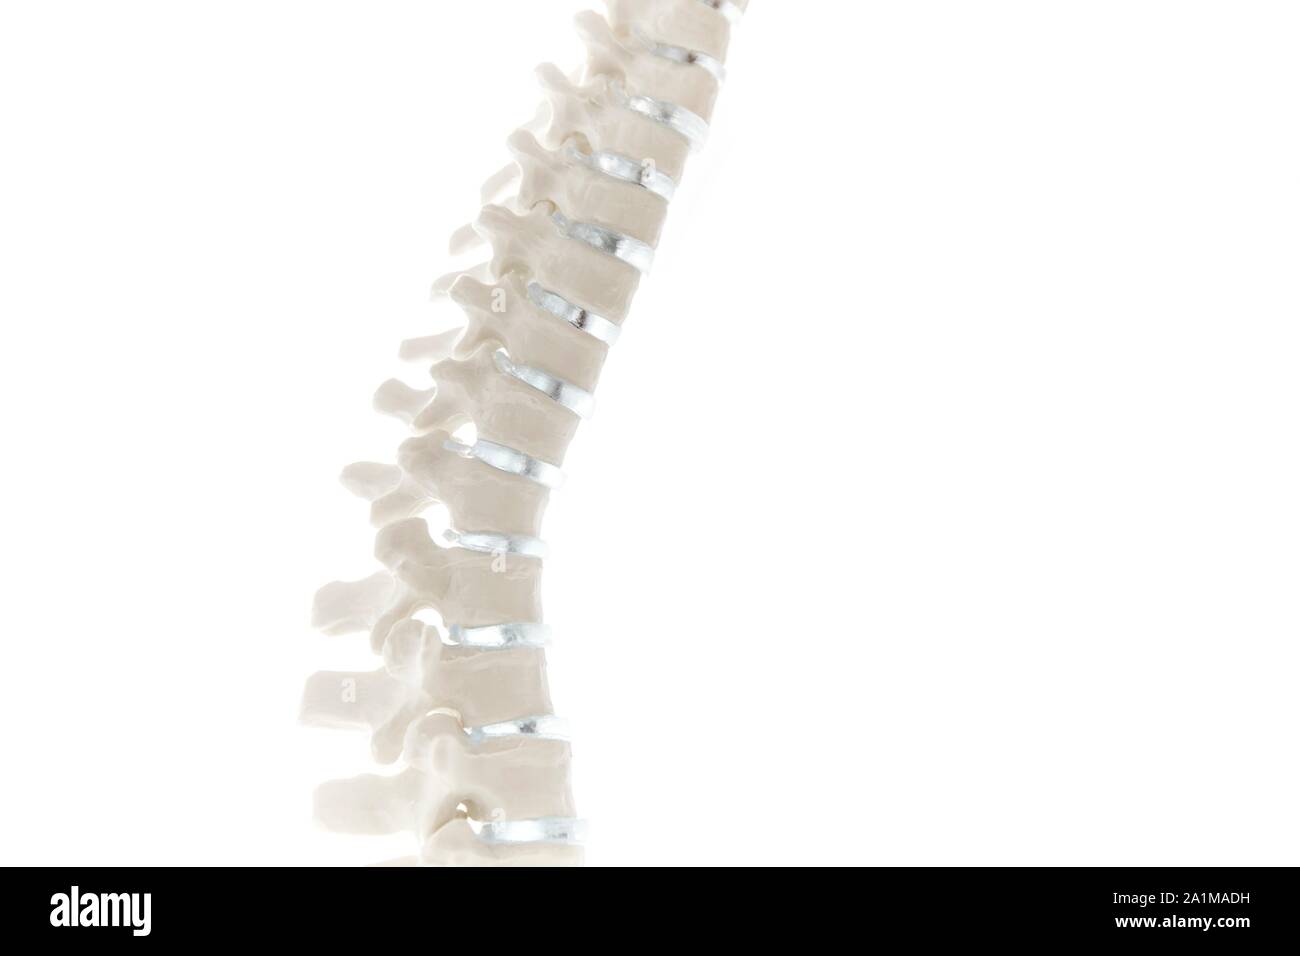 Anatomica modello della colonna vertebrale, close-up. Foto Stock